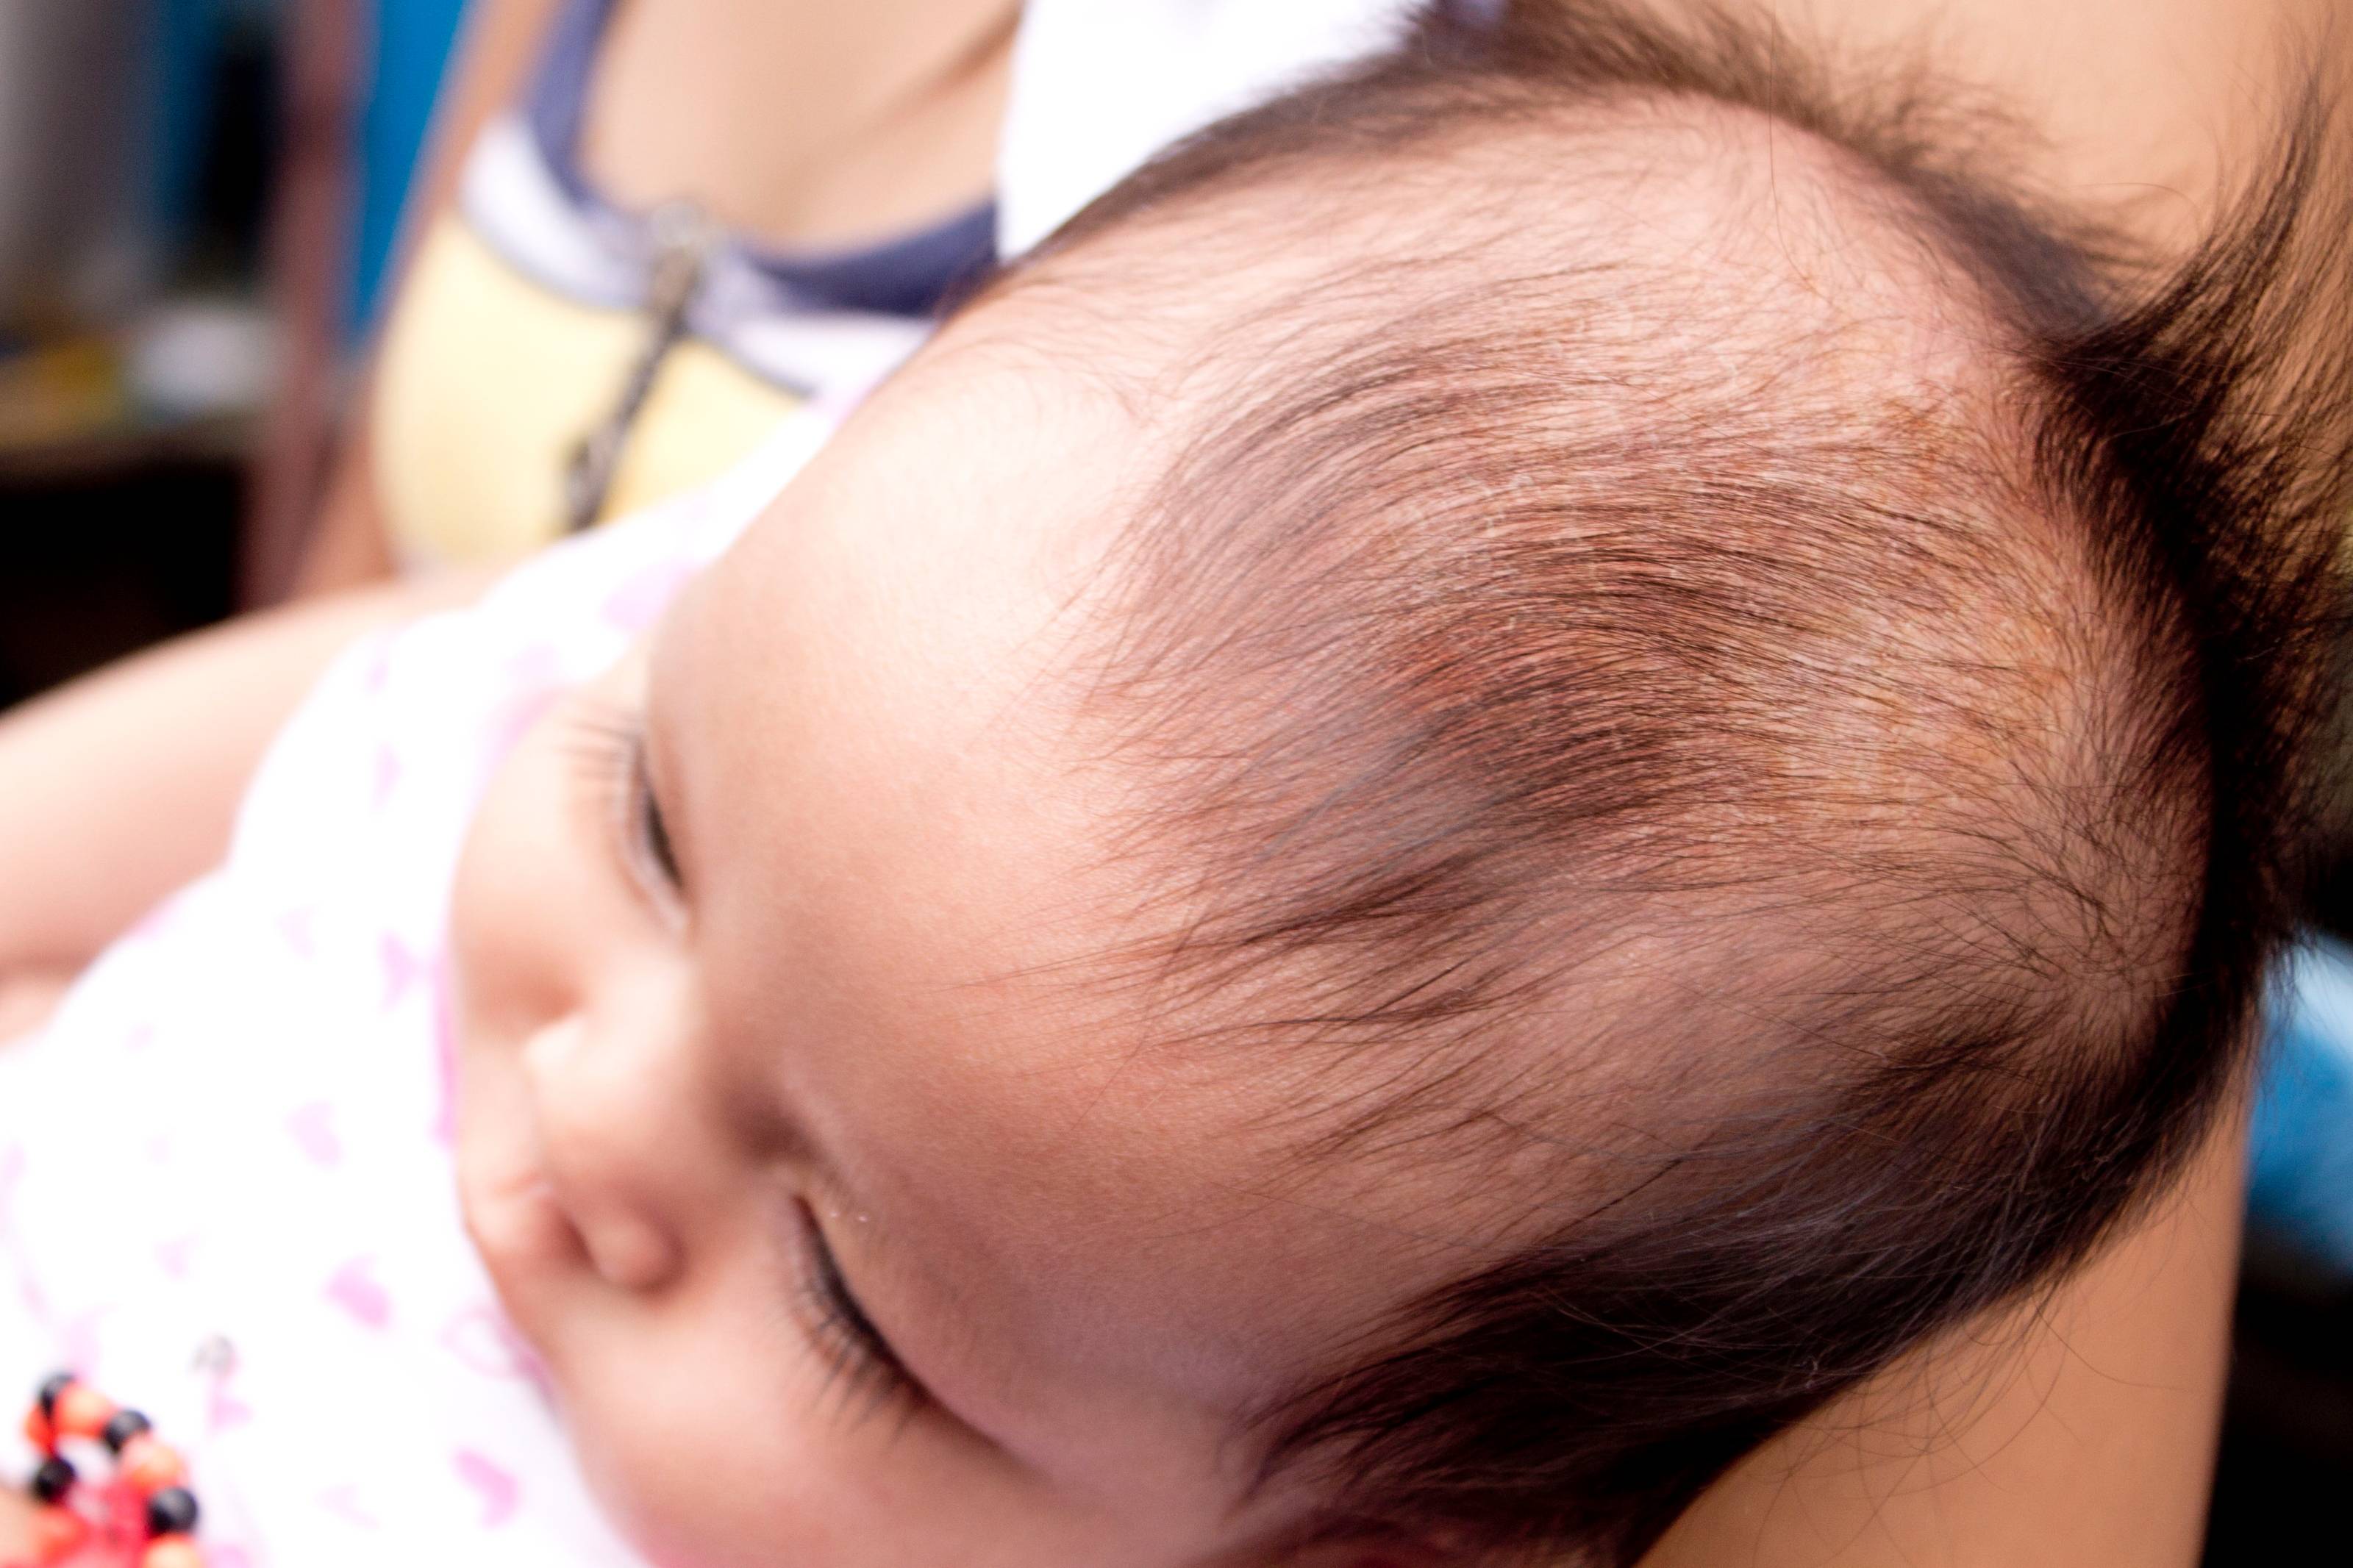 Доктор комаровский о том, как убрать корочки на голове у младенца